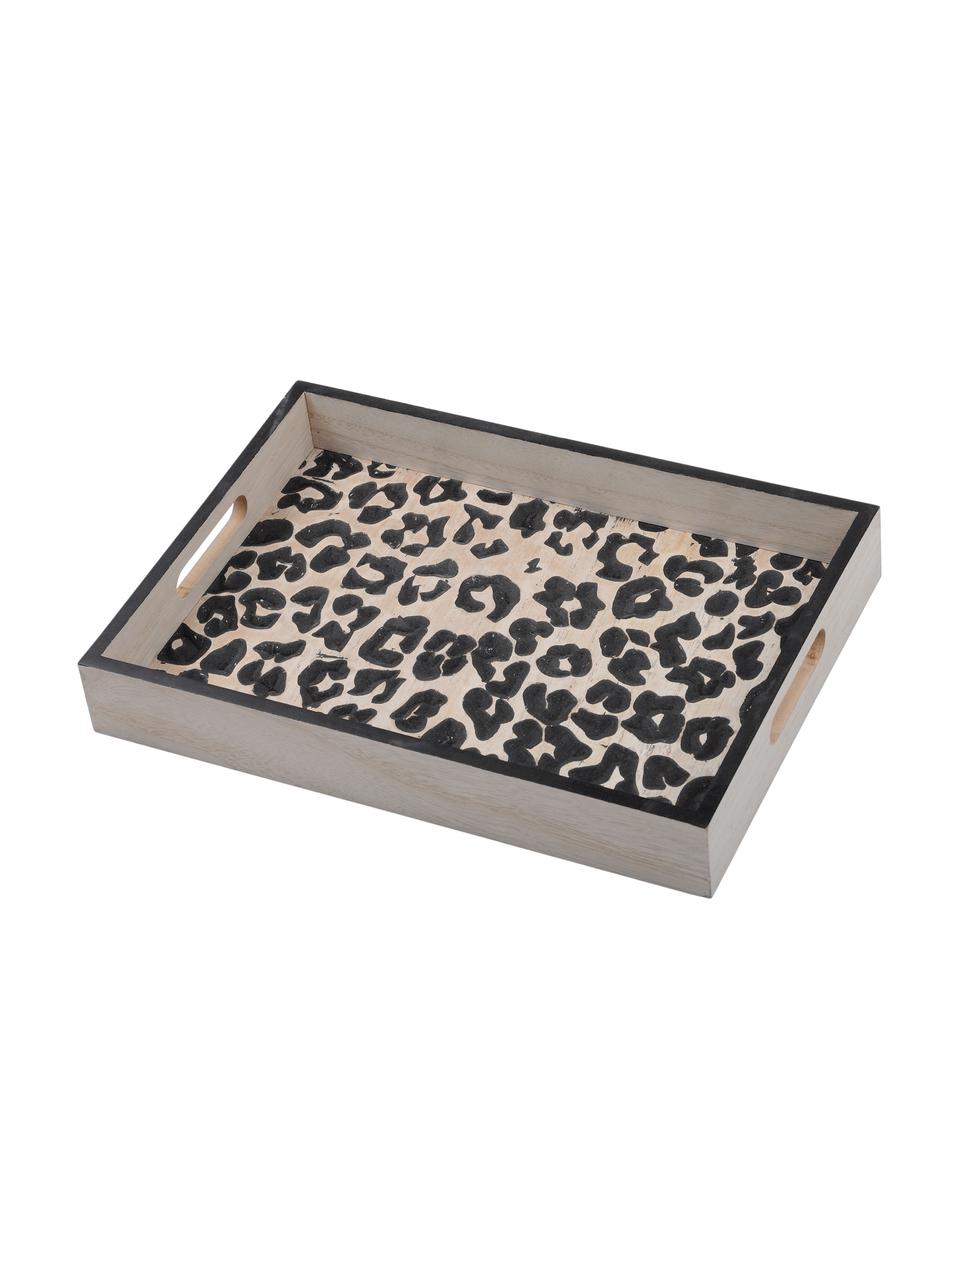 Plateau de service en bois Leopard, 25 x 35 cm, Brun clair, noir